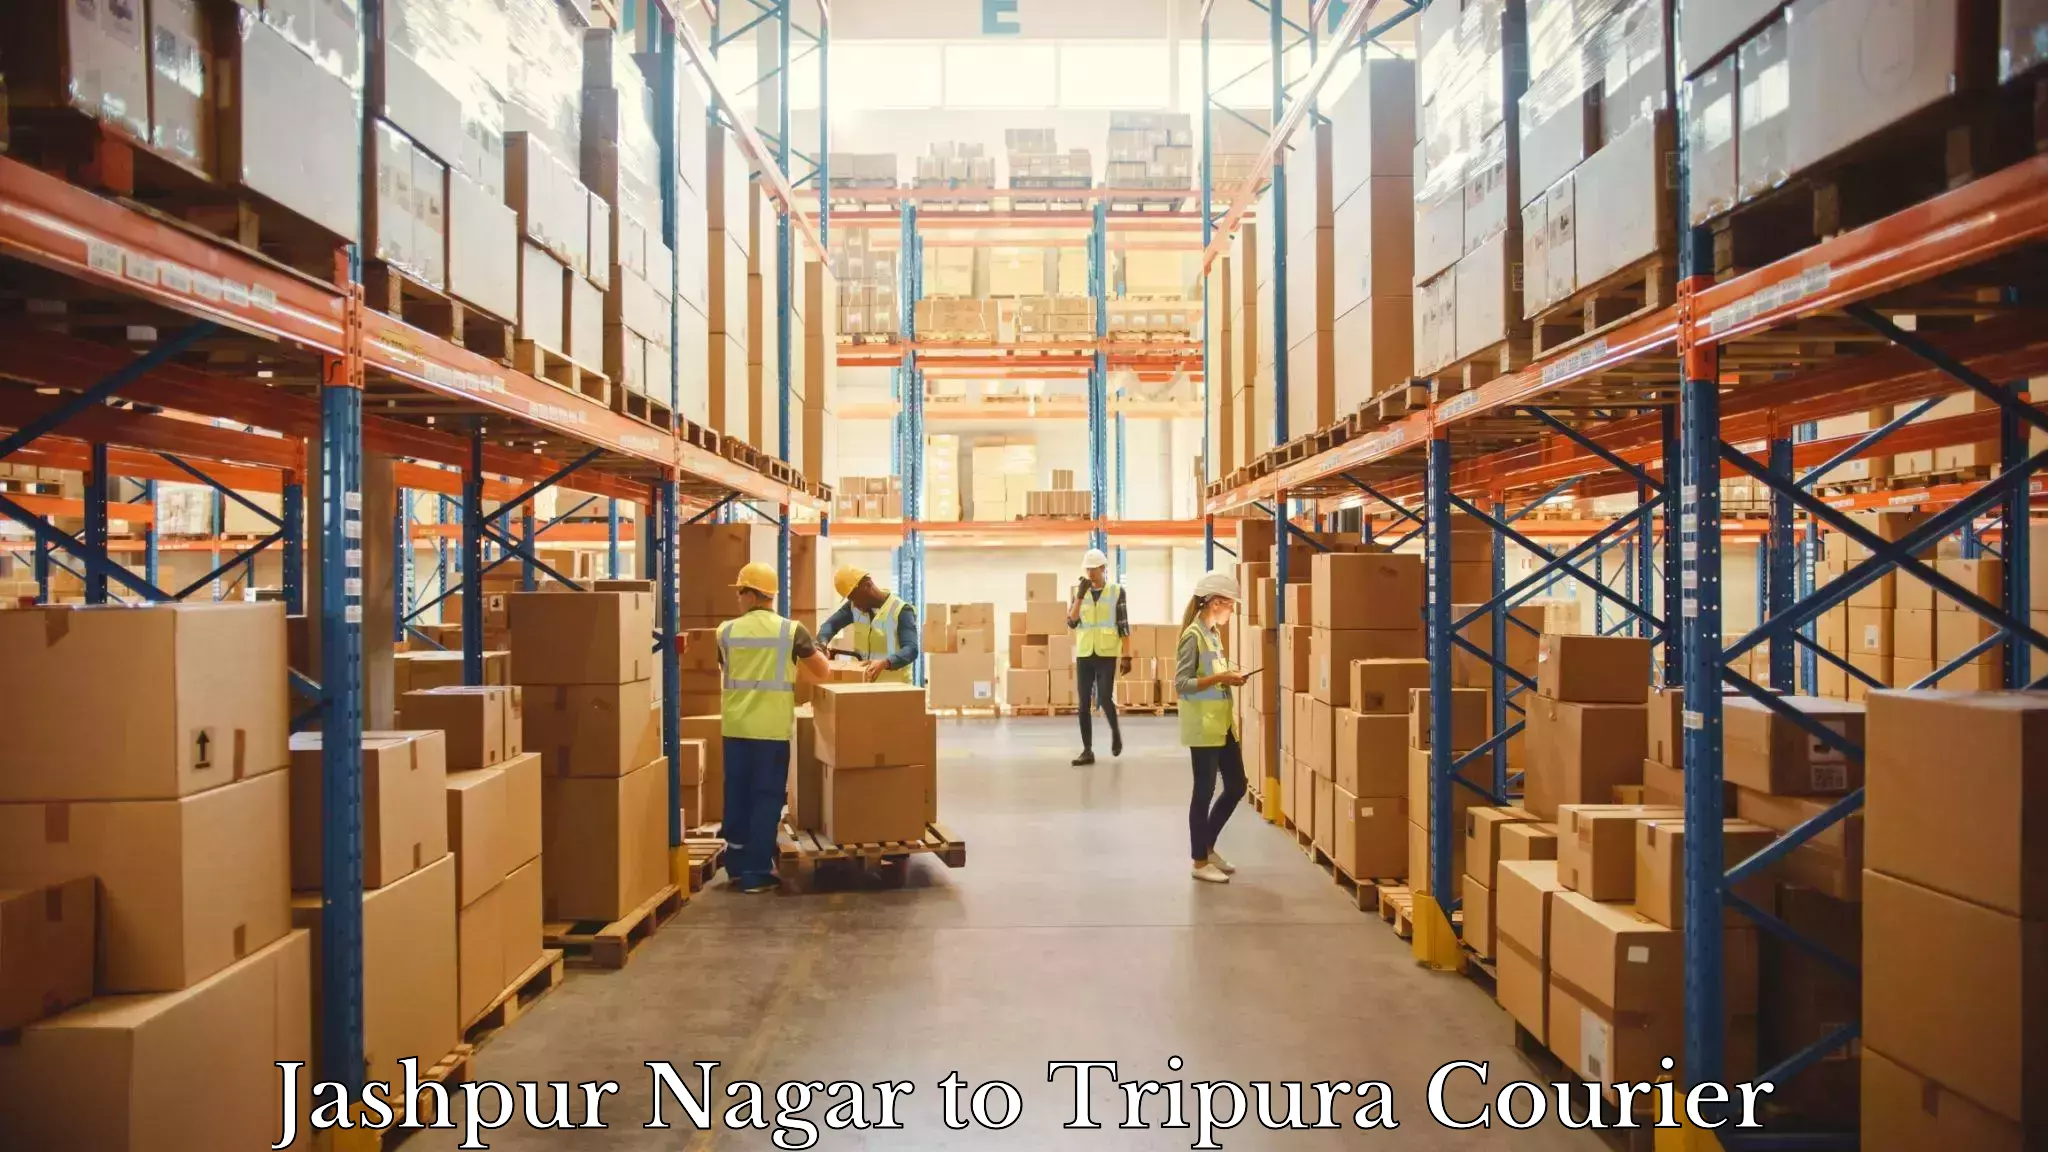 Professional courier handling Jashpur Nagar to Kamalpur